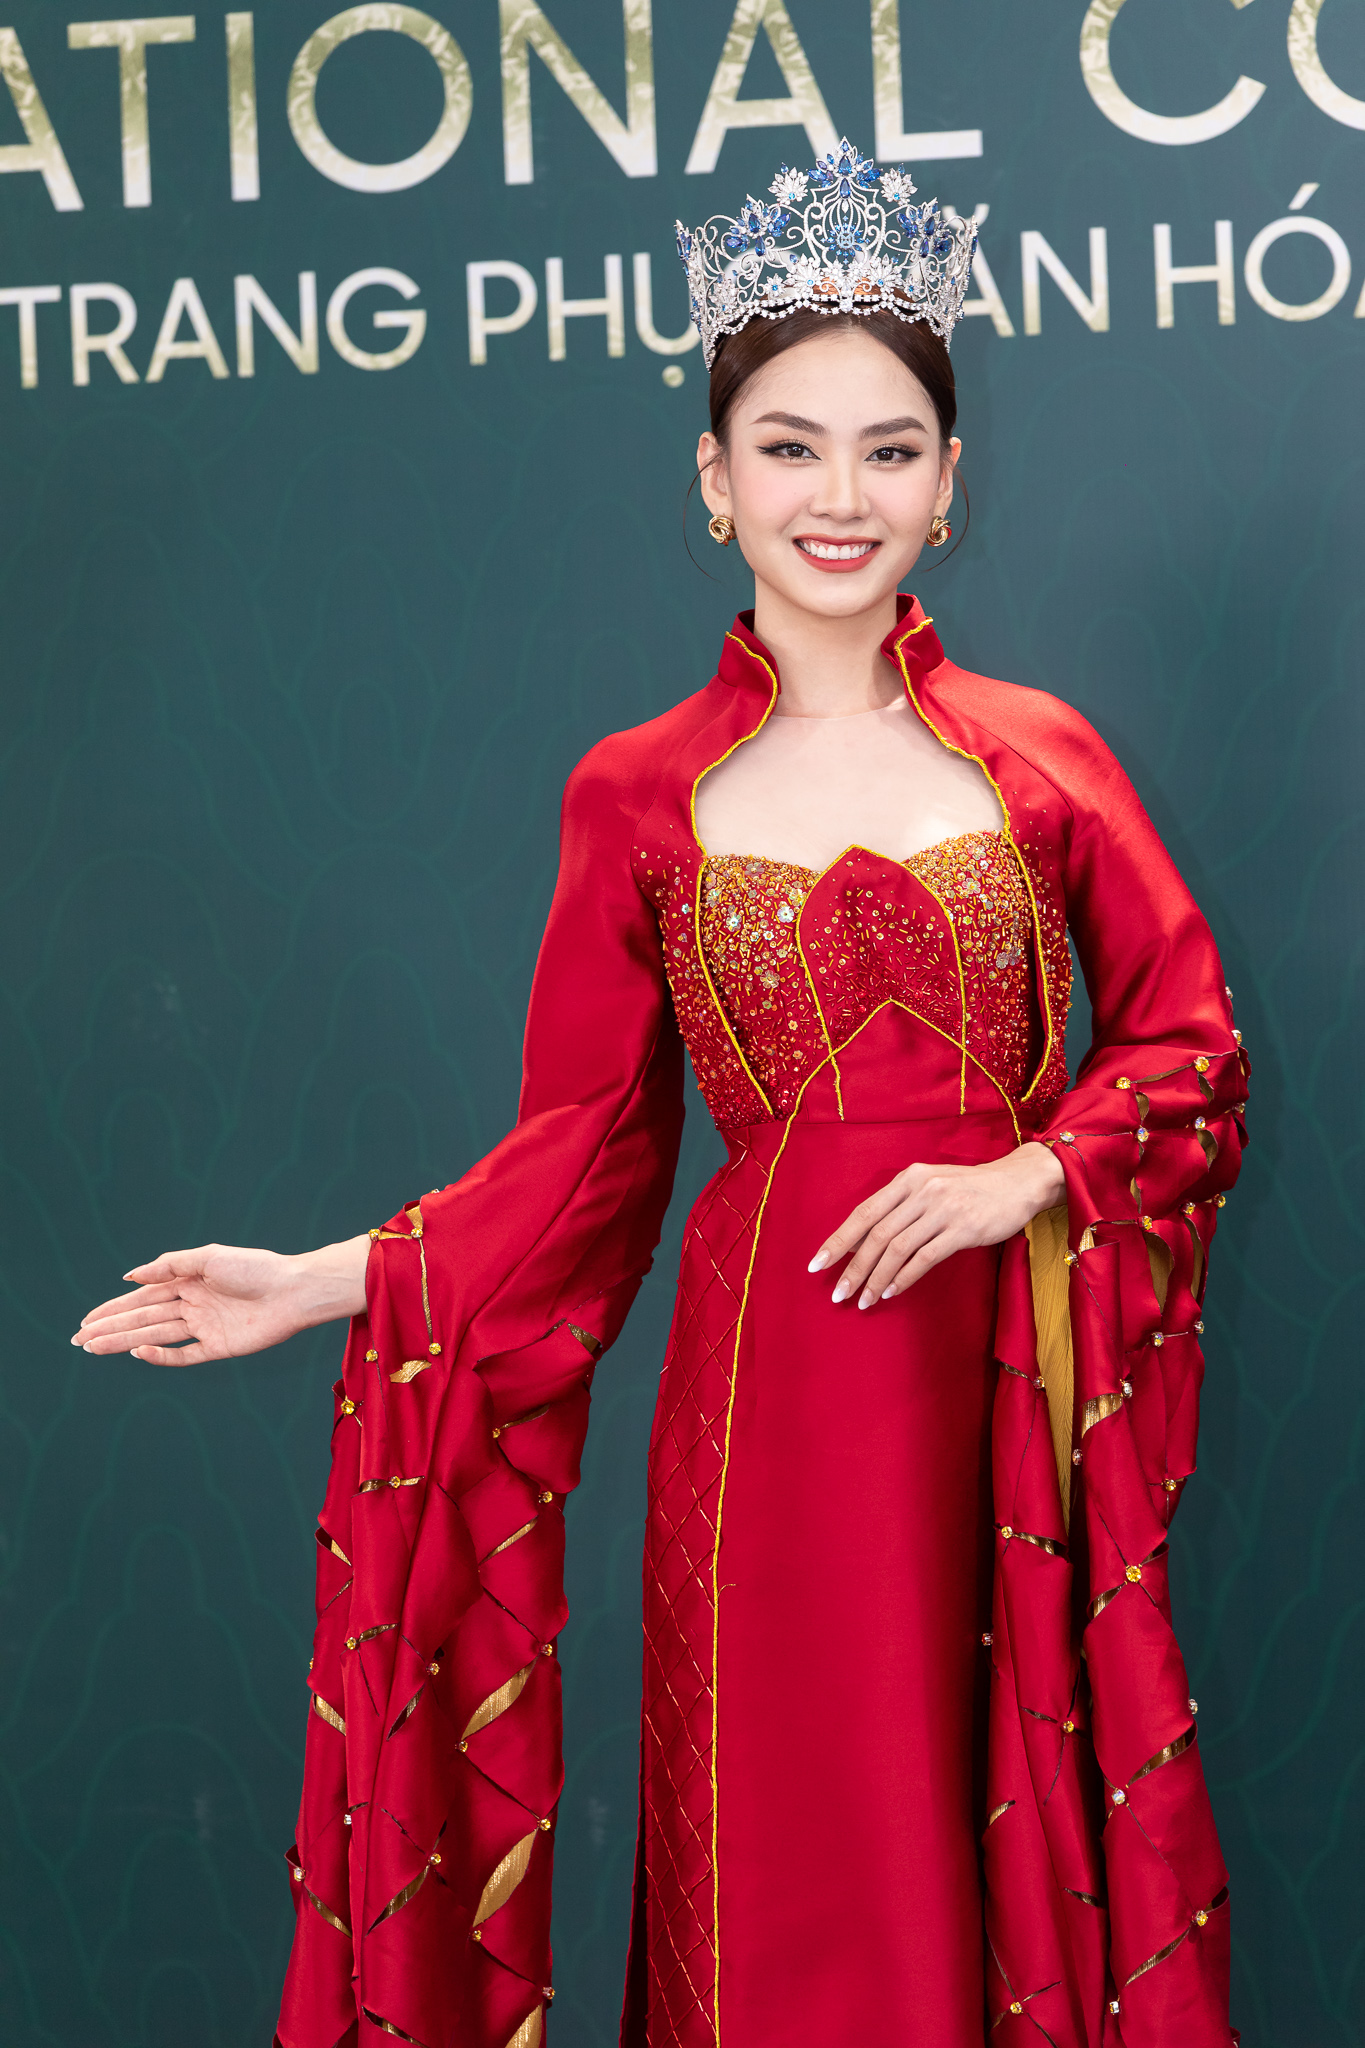 Hoa hậu Thùy Tiên - Mai Phương cùng dàn mỹ nhân quyền lực trên thảm đỏ Hoa hậu Hòa bình Việt Nam  - Ảnh 2.